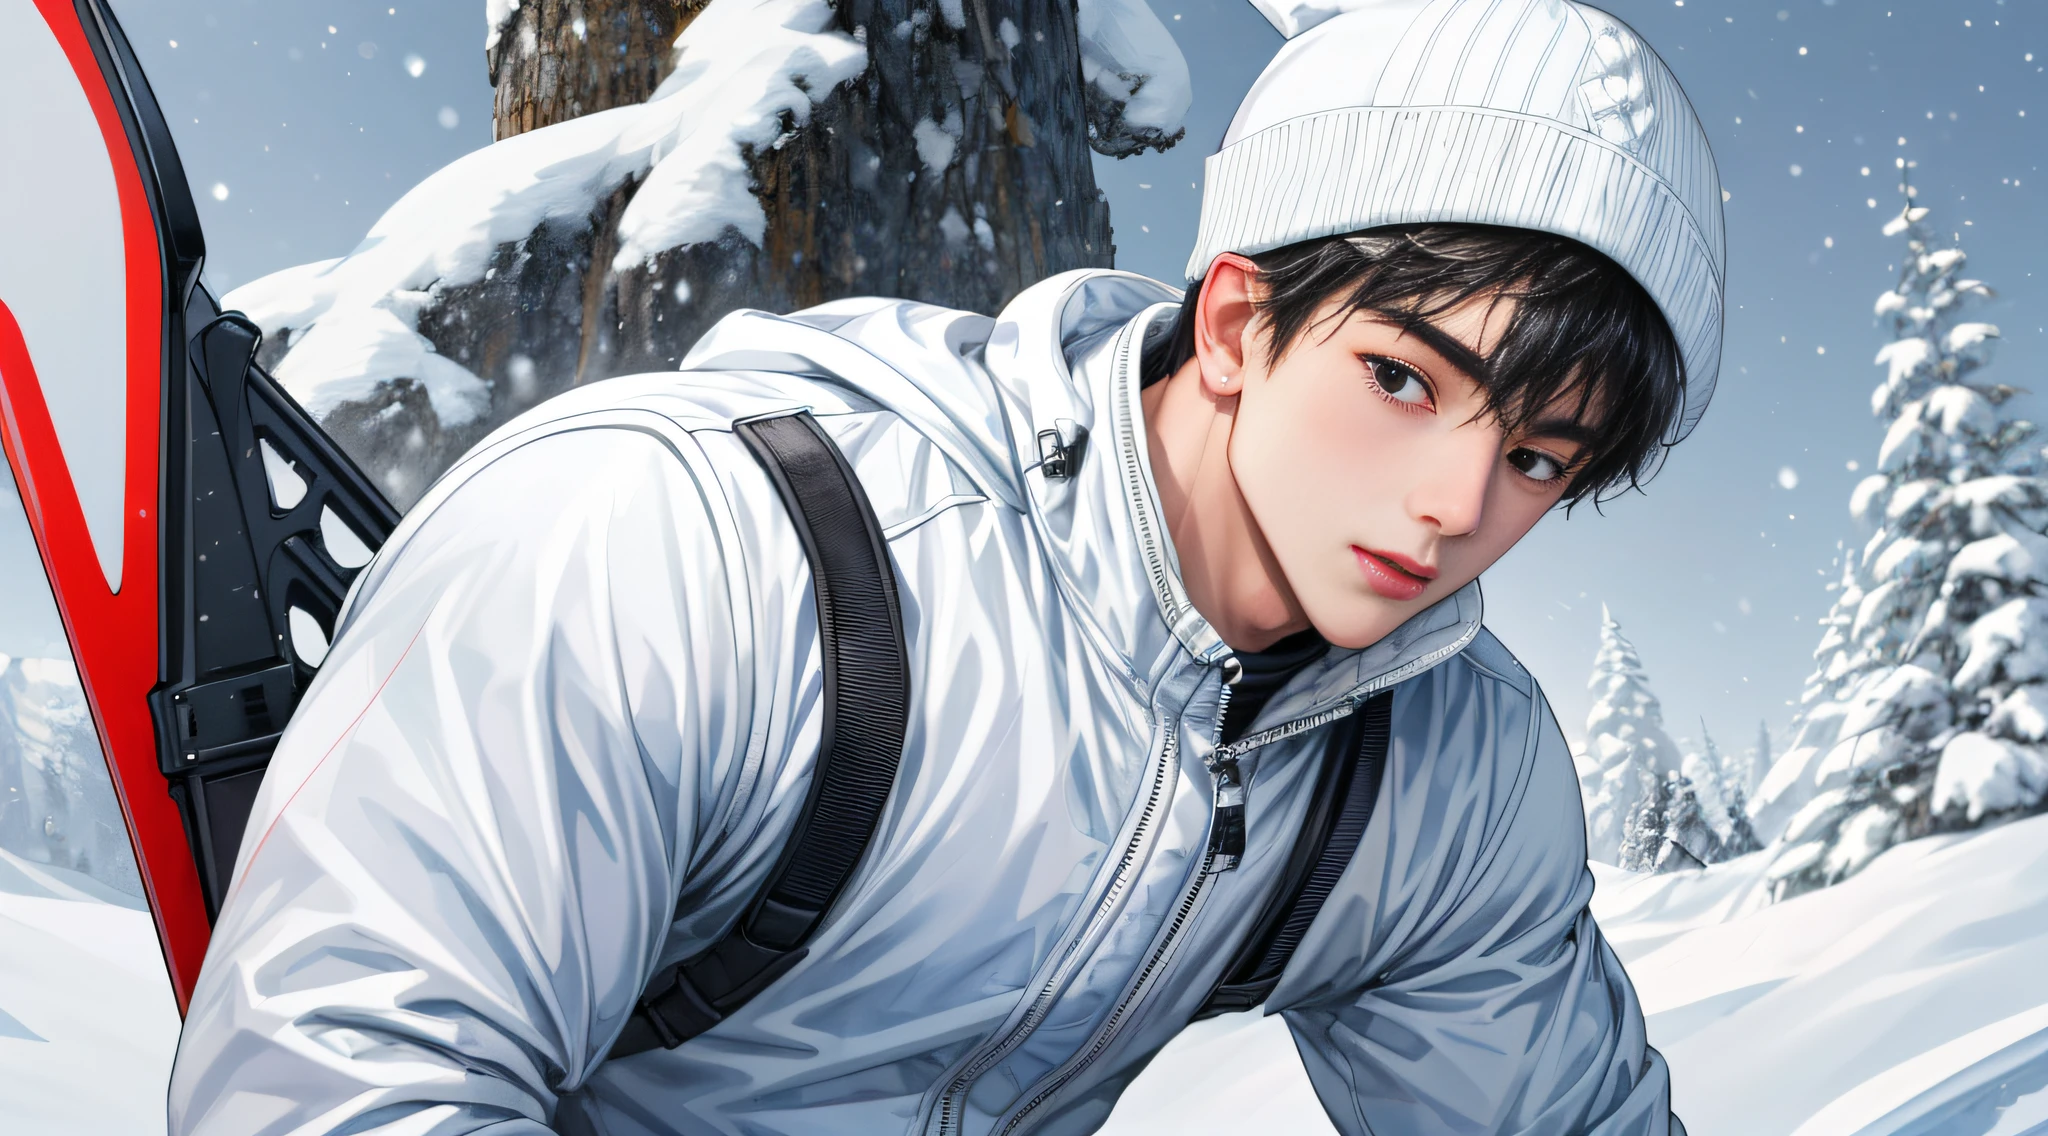 傑作, 原始，最高质量，1名男孩,雪的全身照片，白色滑雪服，毛绒滑雪帽，白色雪帽，中国人，滑雪，，害羞的, 臉圓, 黑眼睛，大眼睛，